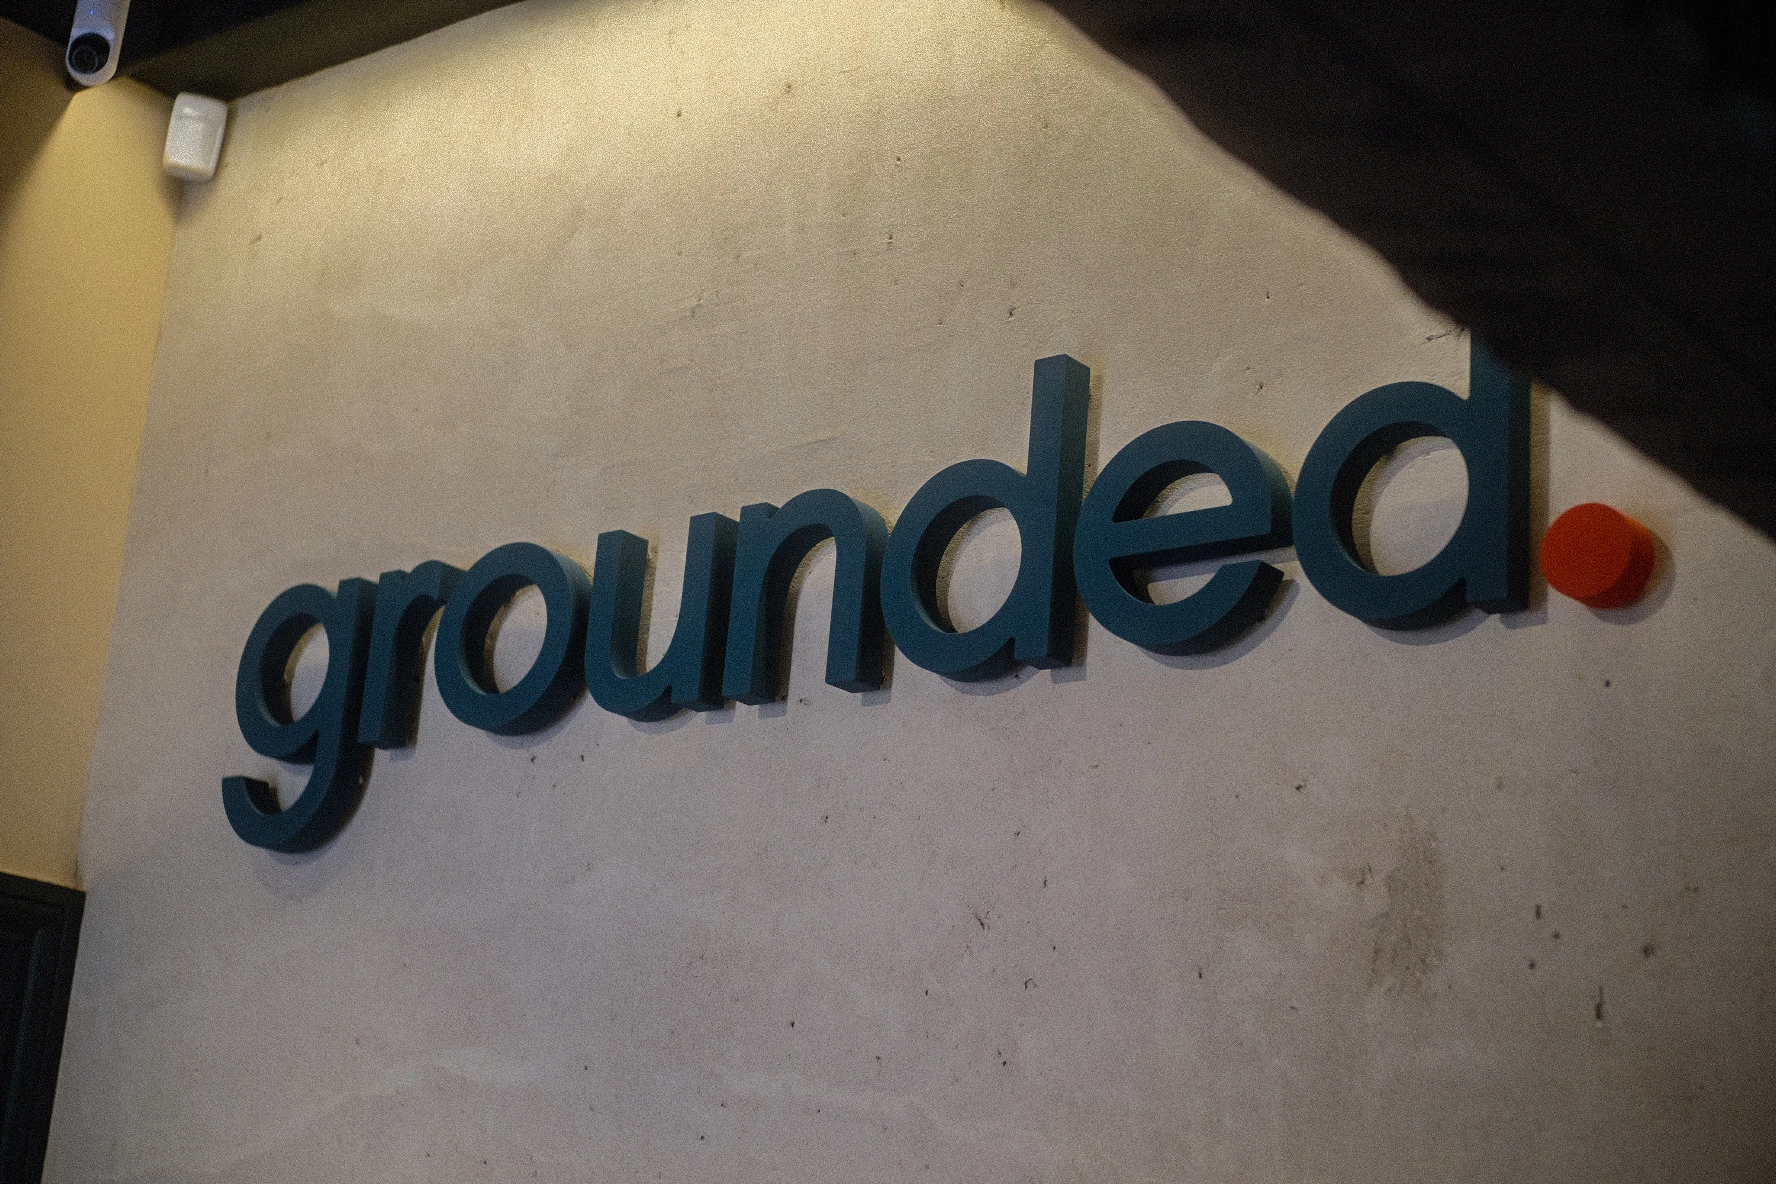 grounded. cafe signage